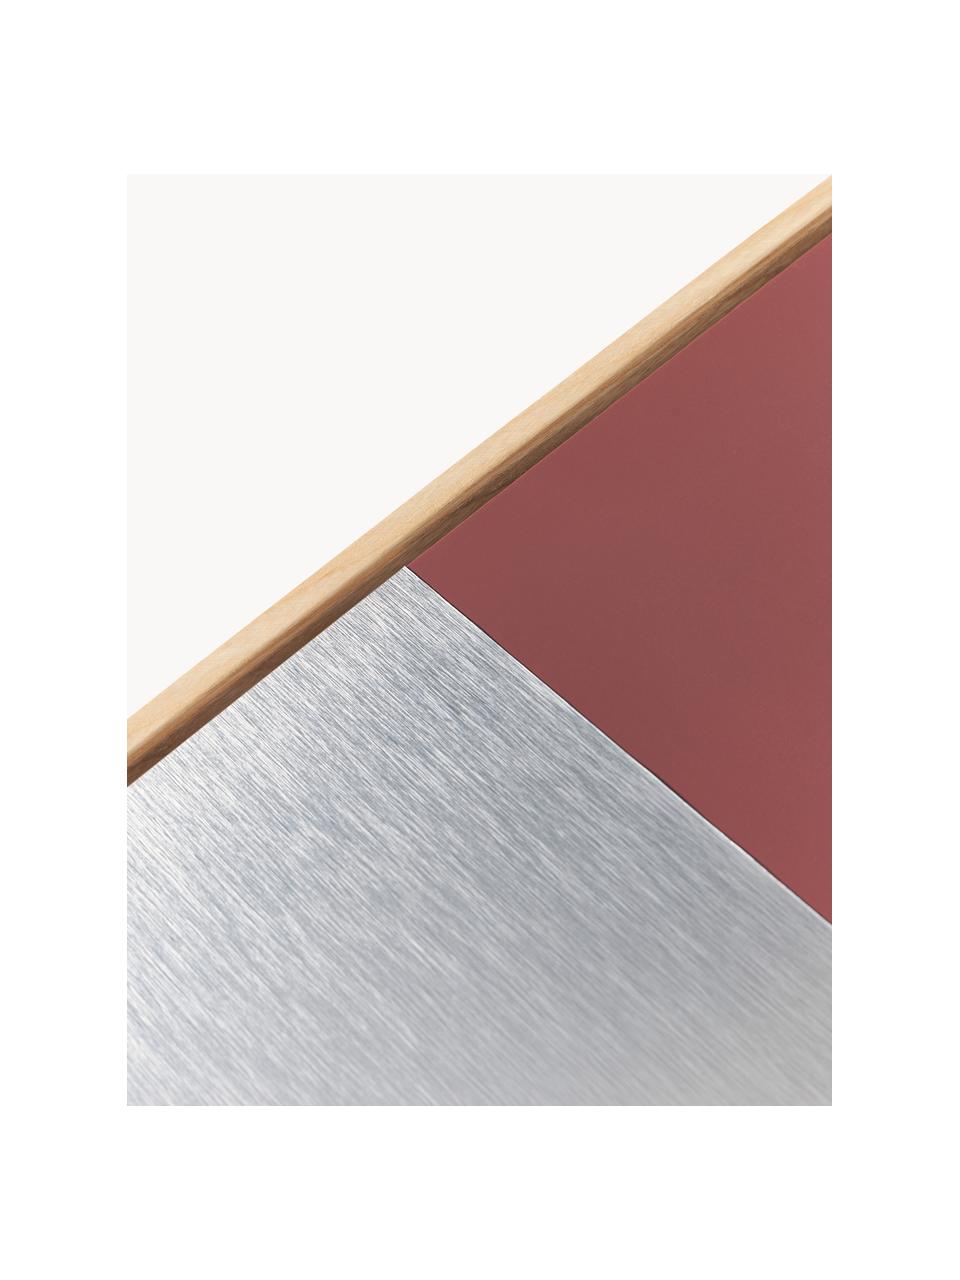 Sada nástěnných dekorací Duo, 4 díly, Dubové dřevo, dřevovláknitá deska střední hustoty (MDF), hliník, Dubové dřevo, stříbrná, rezavě červená, Š 50 cm, V 50 cm